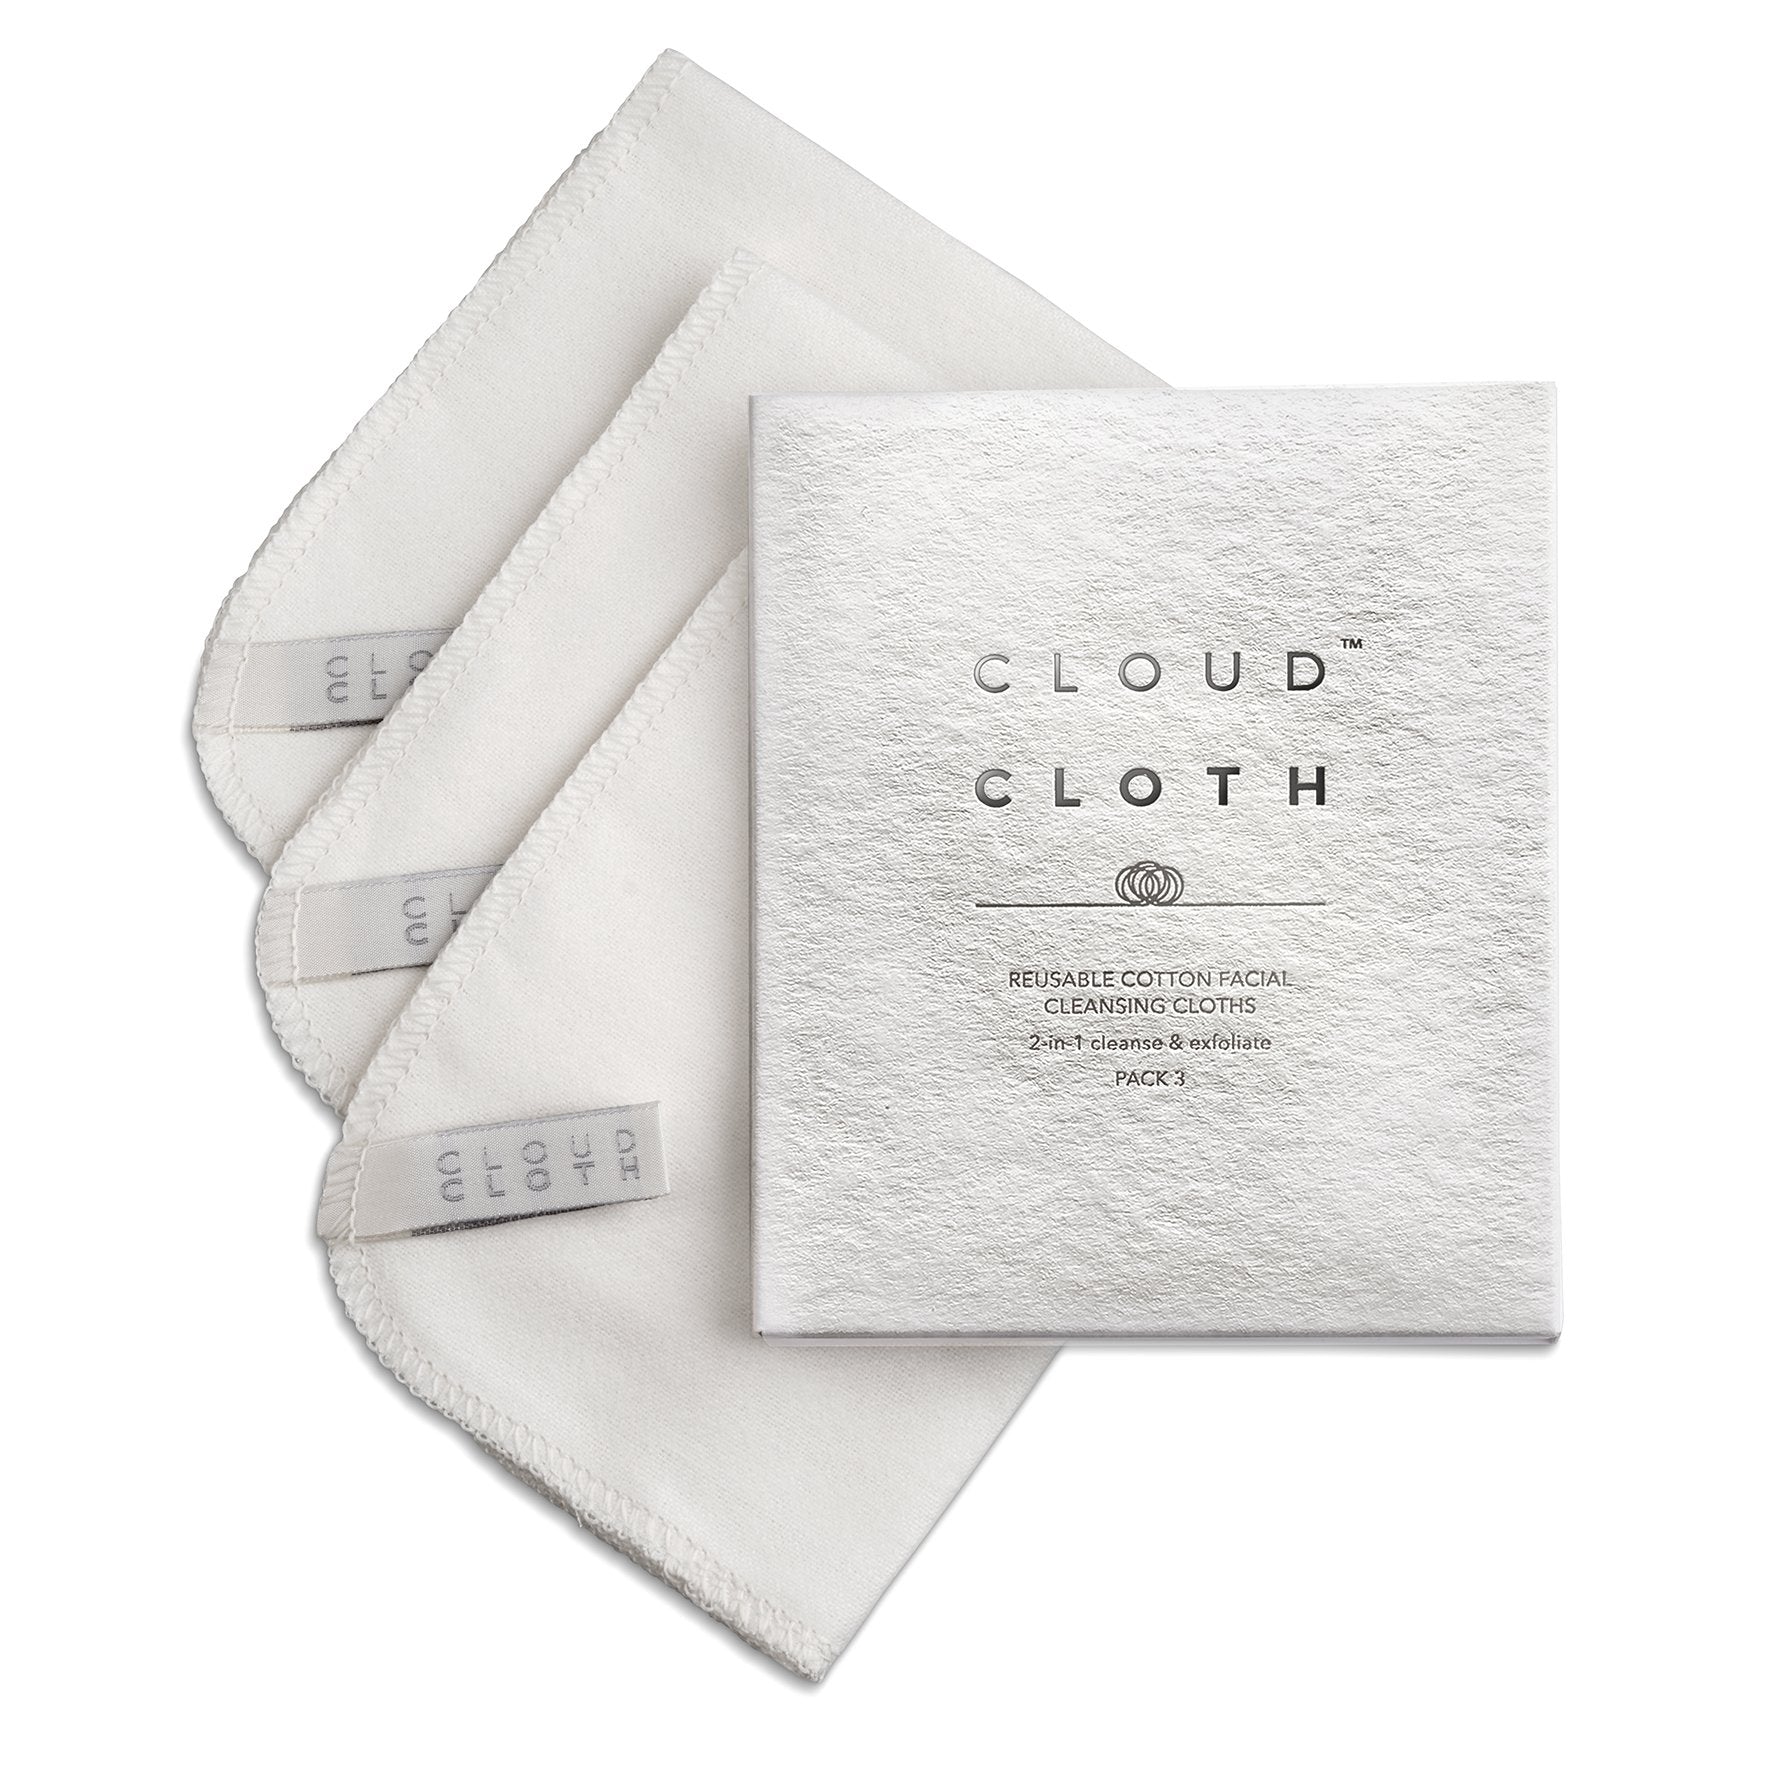 cloudcloth